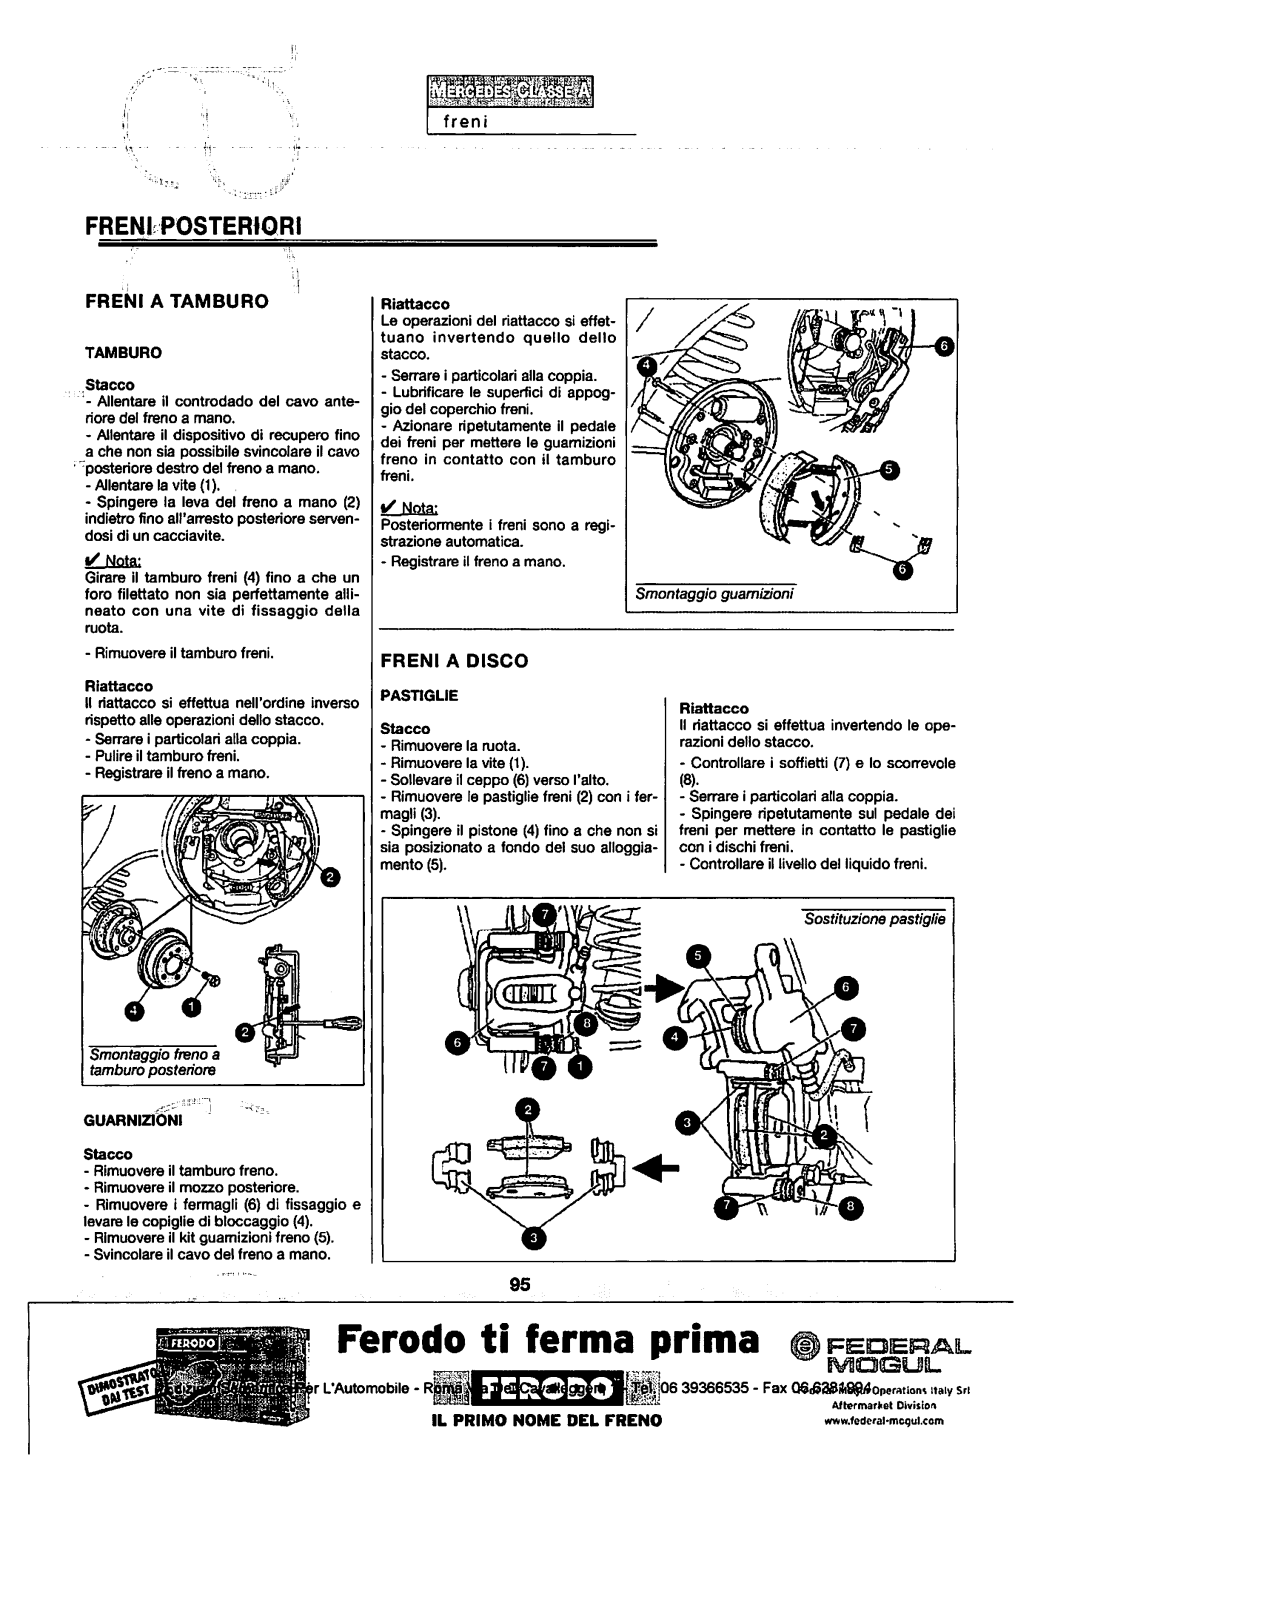 w168 - (W168): Manual técnico - tudo sobre - 1997 a 2004 - italiano 2dsdzef